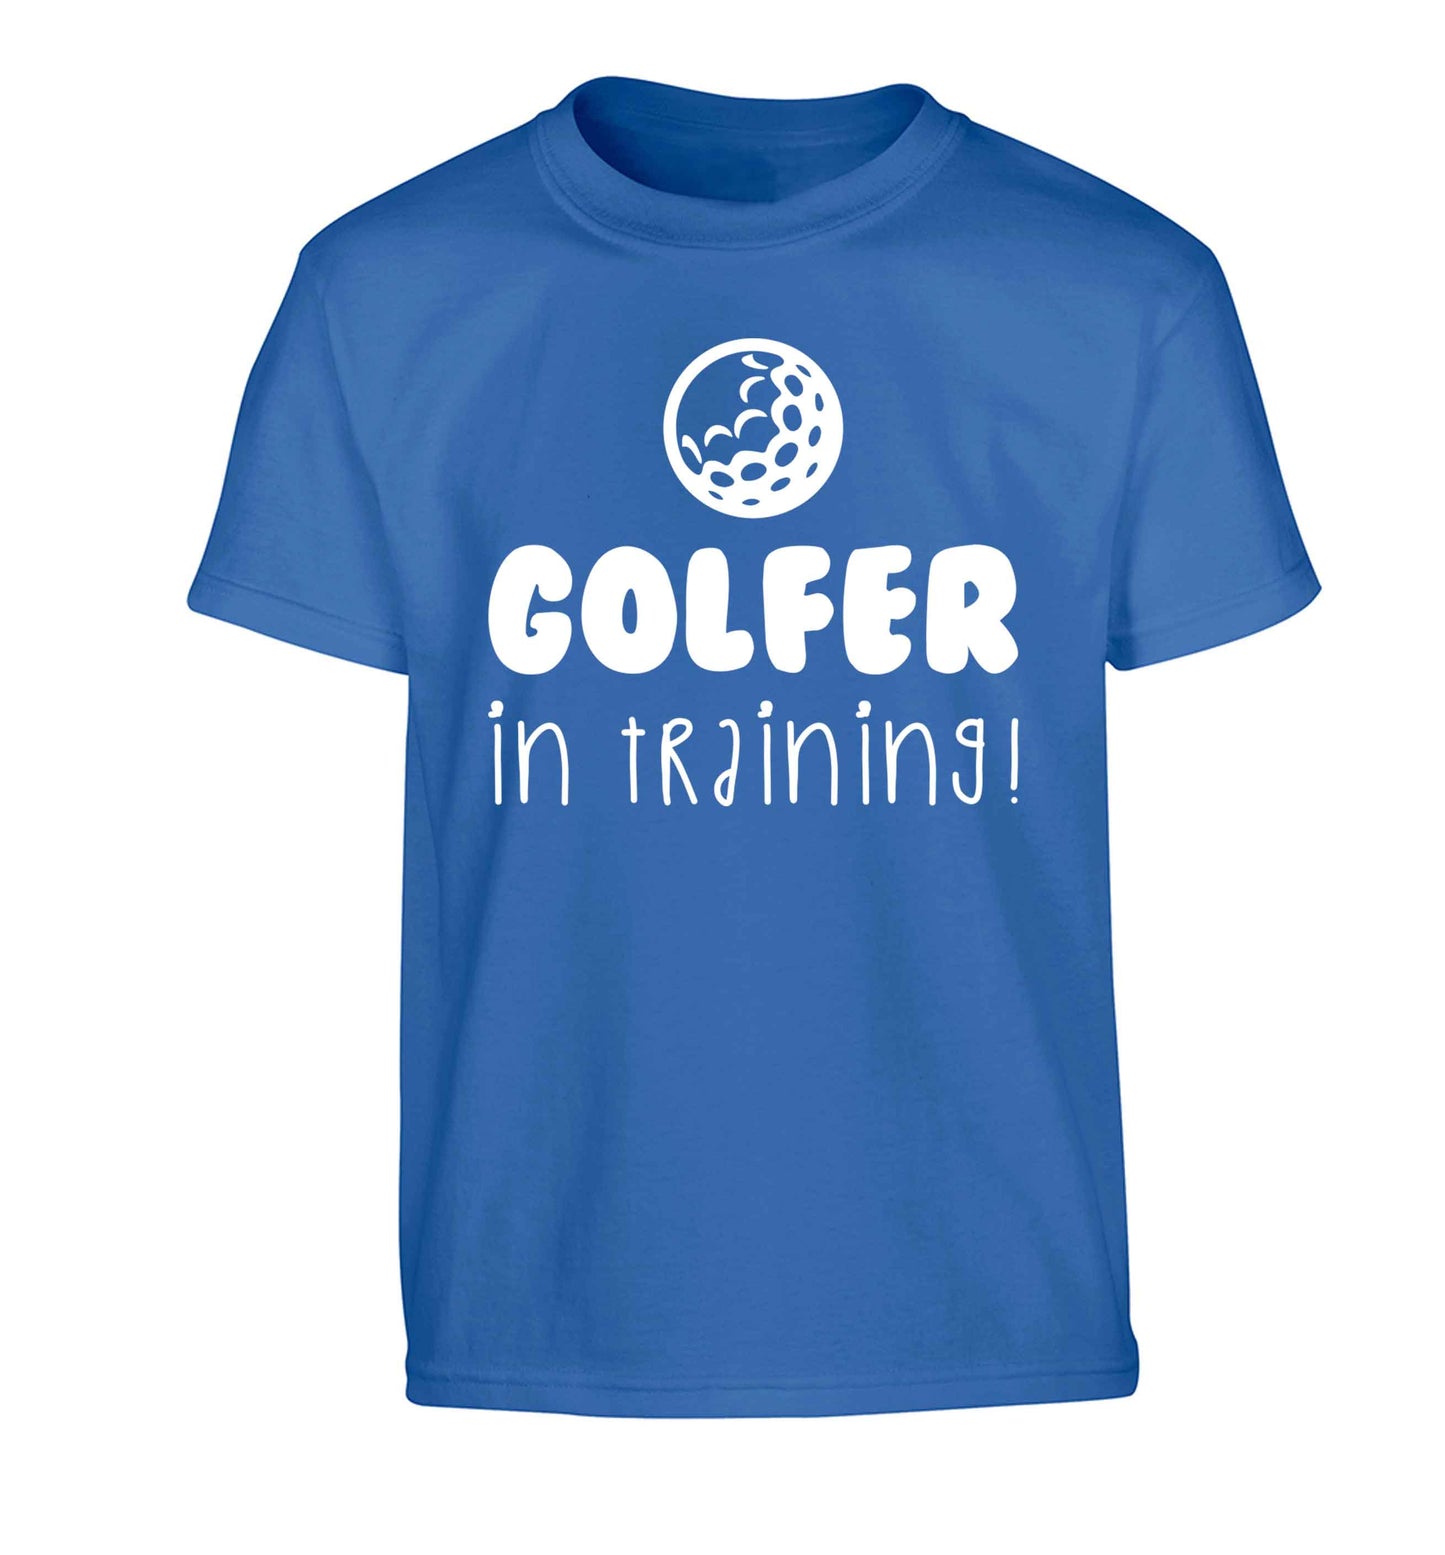 Golfer in training Children's blue Tshirt 12-13 Years